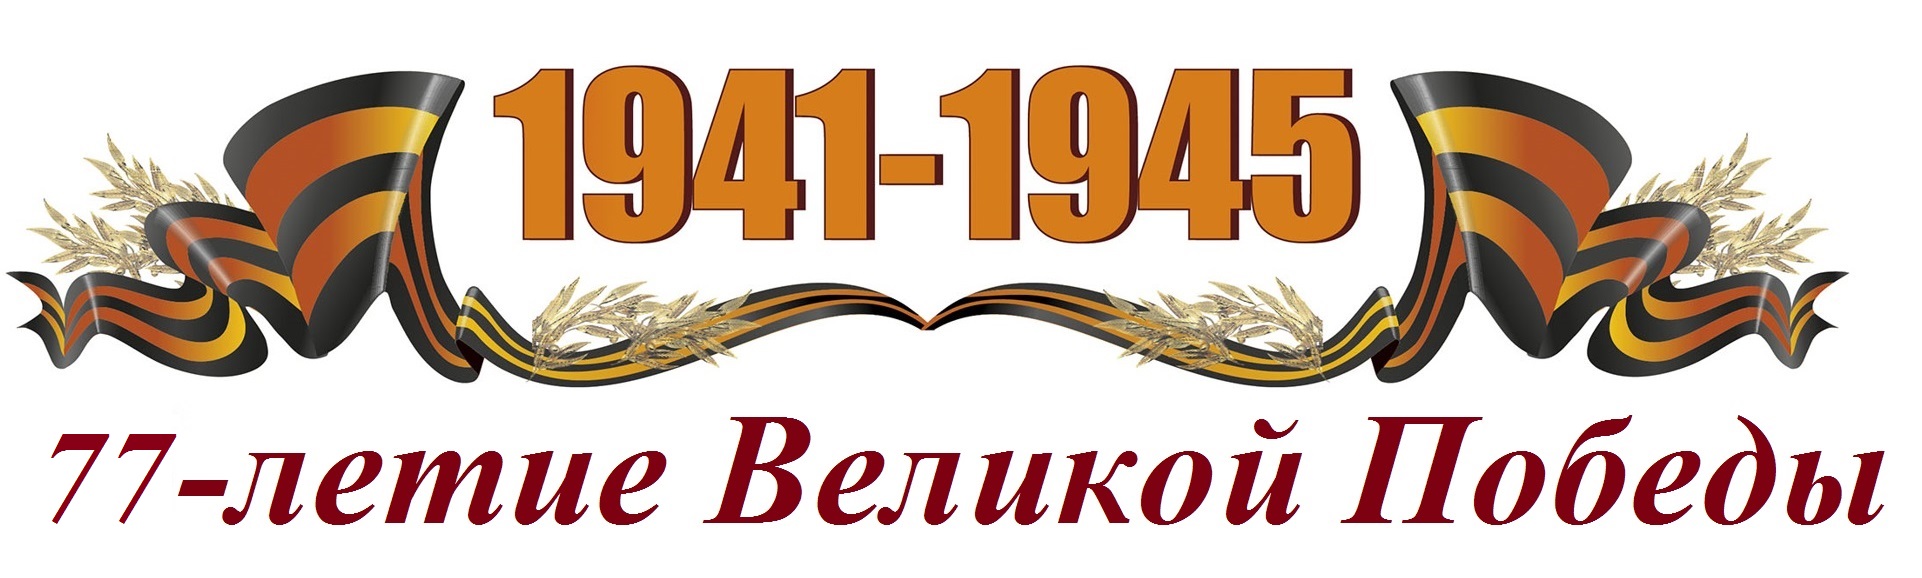 Георгиевская лента 1941-1945